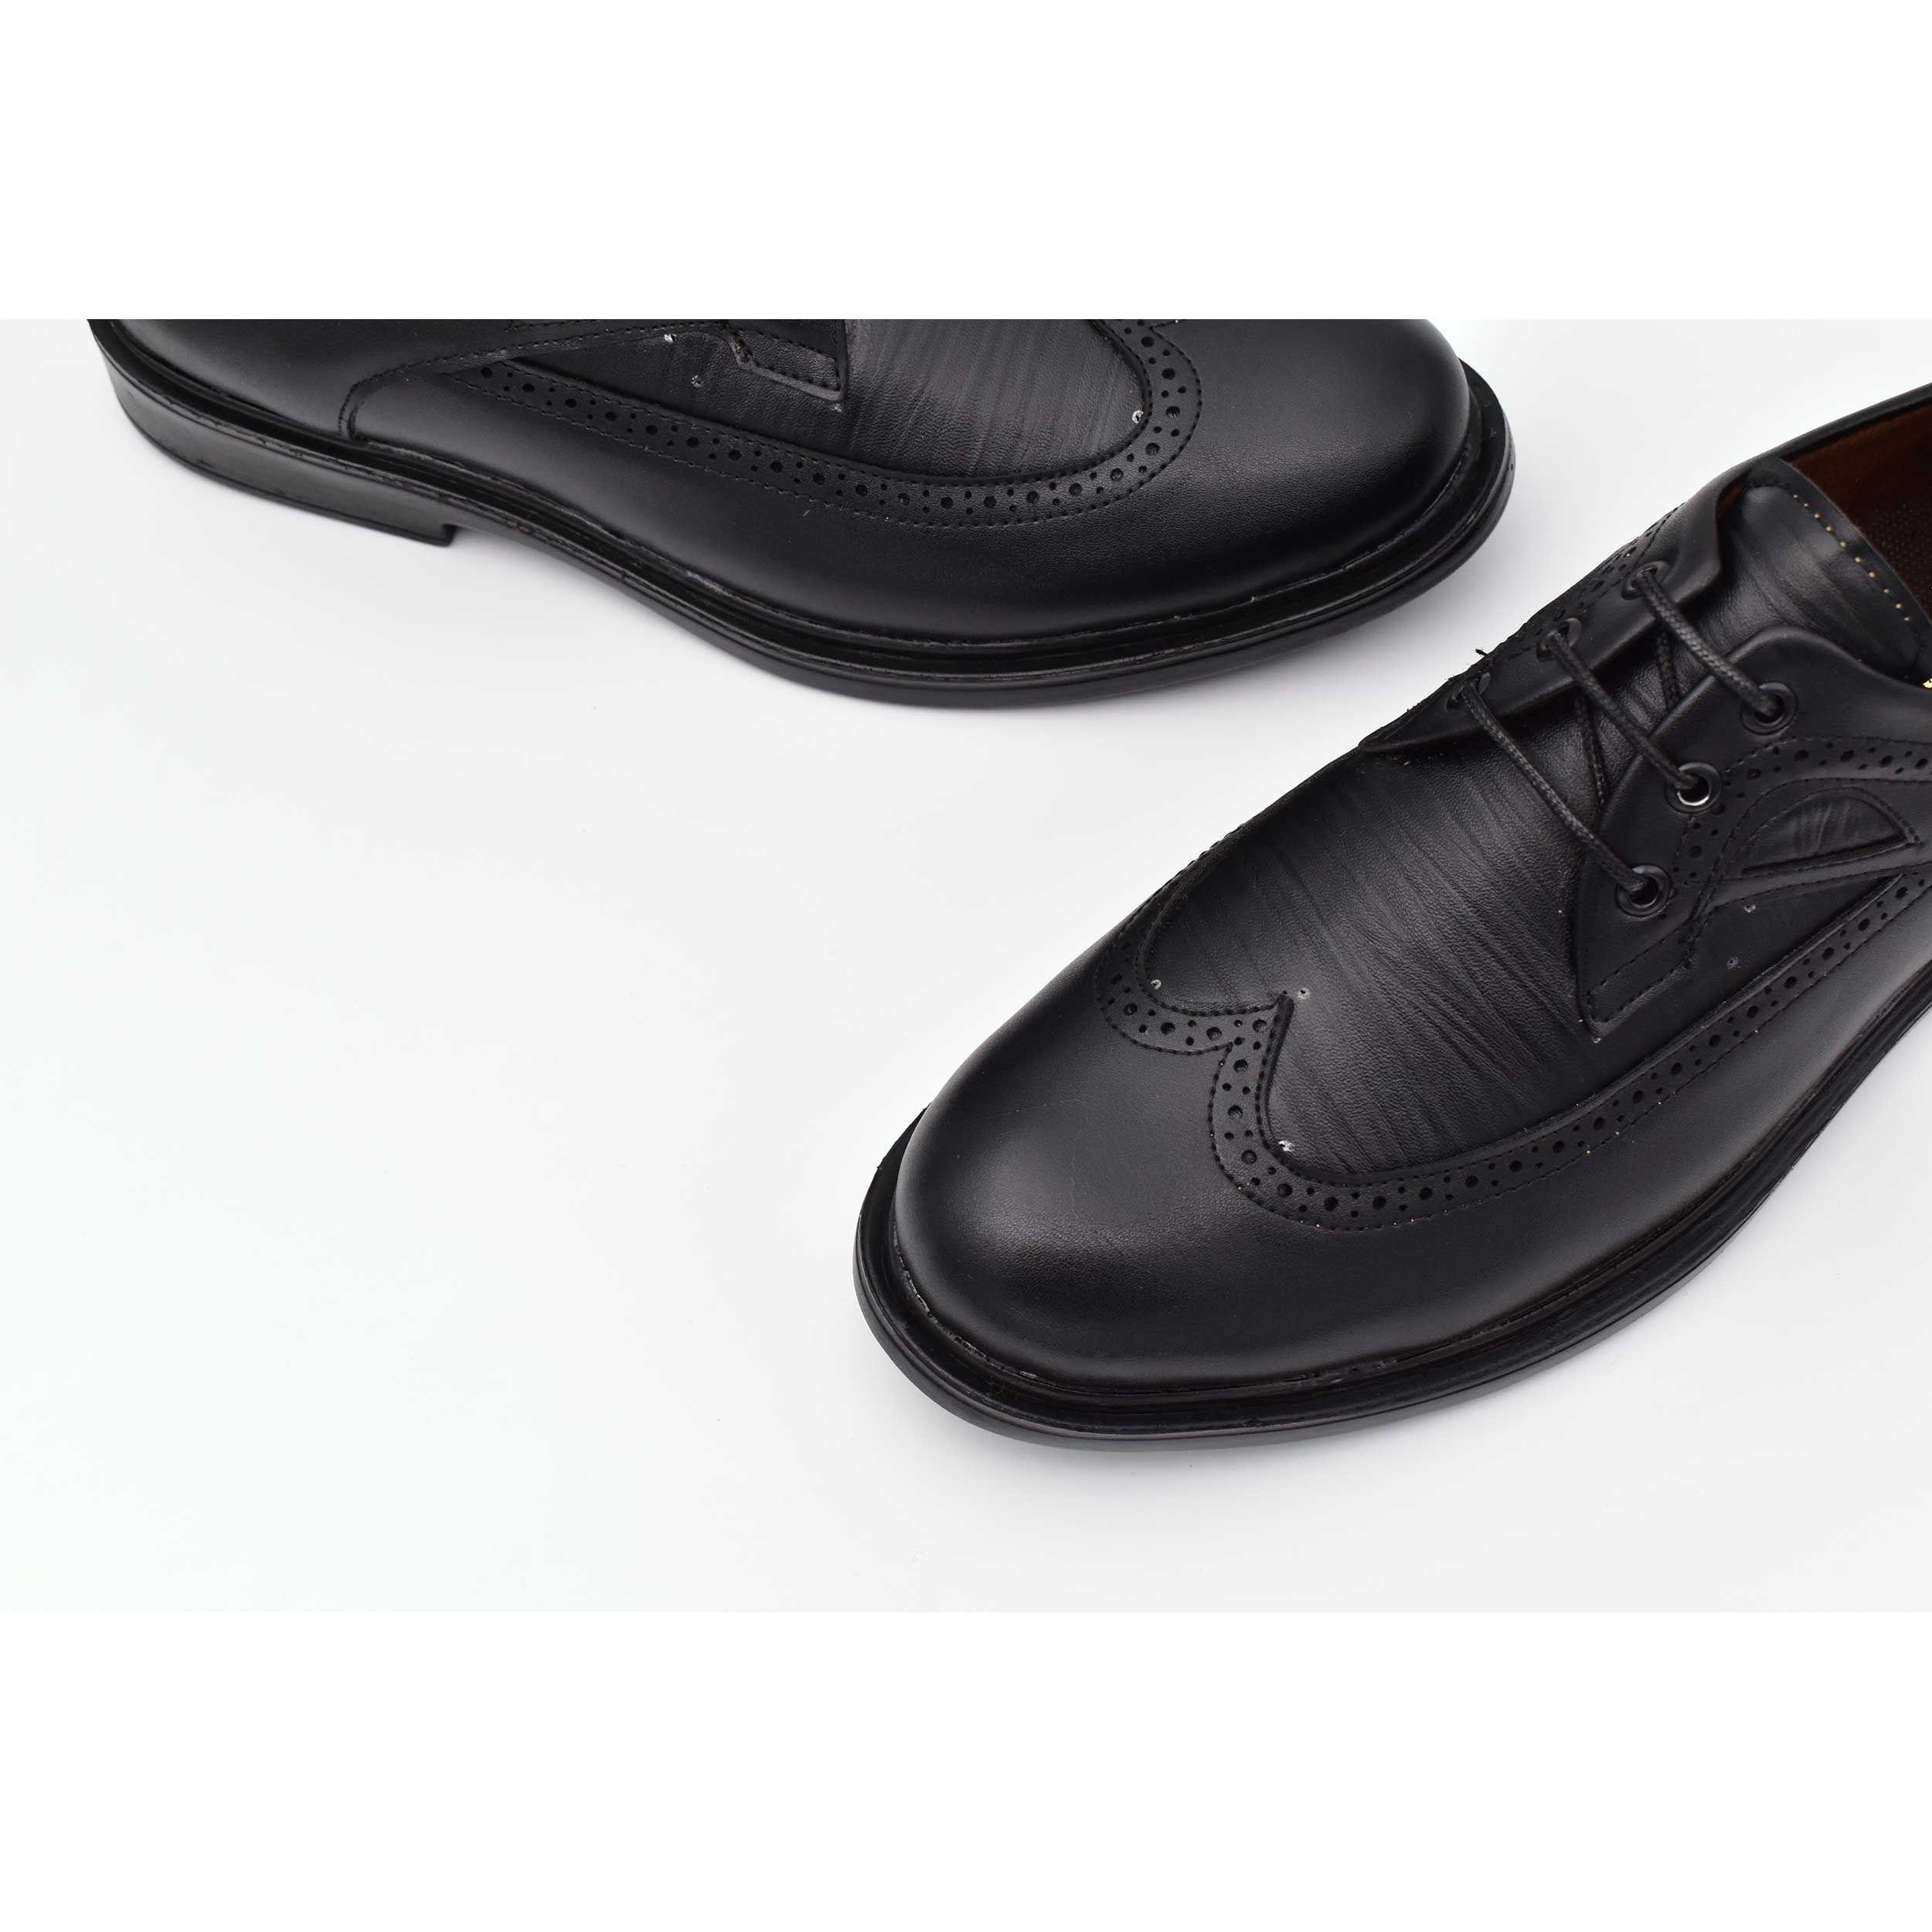  کفش مردانه مدل ونیز کد 7528